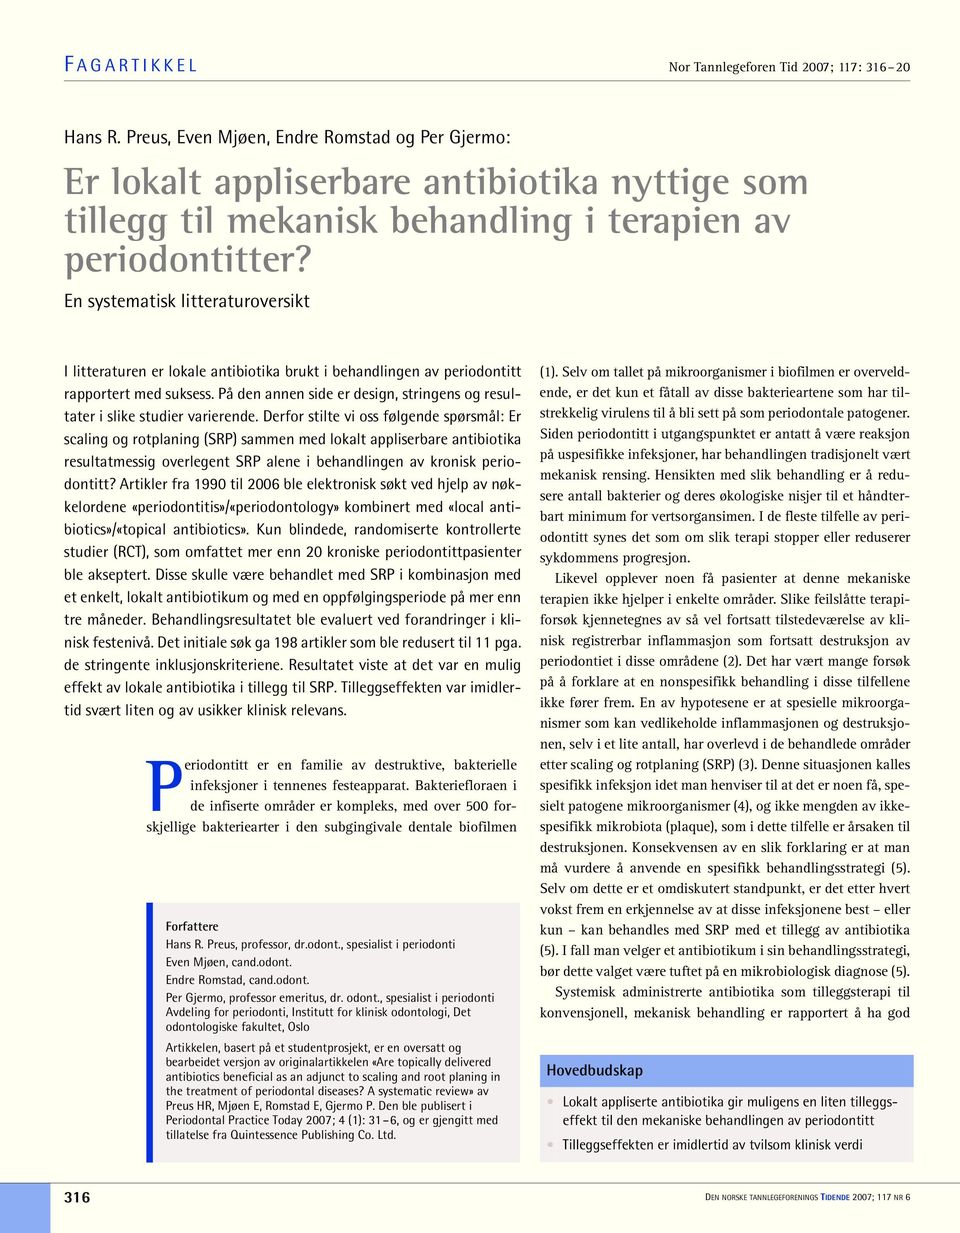 En systematisk litteraturoversikt I litteraturen er lokale antibiotika brukt i behandlingen av periodontitt rapportert med suksess.